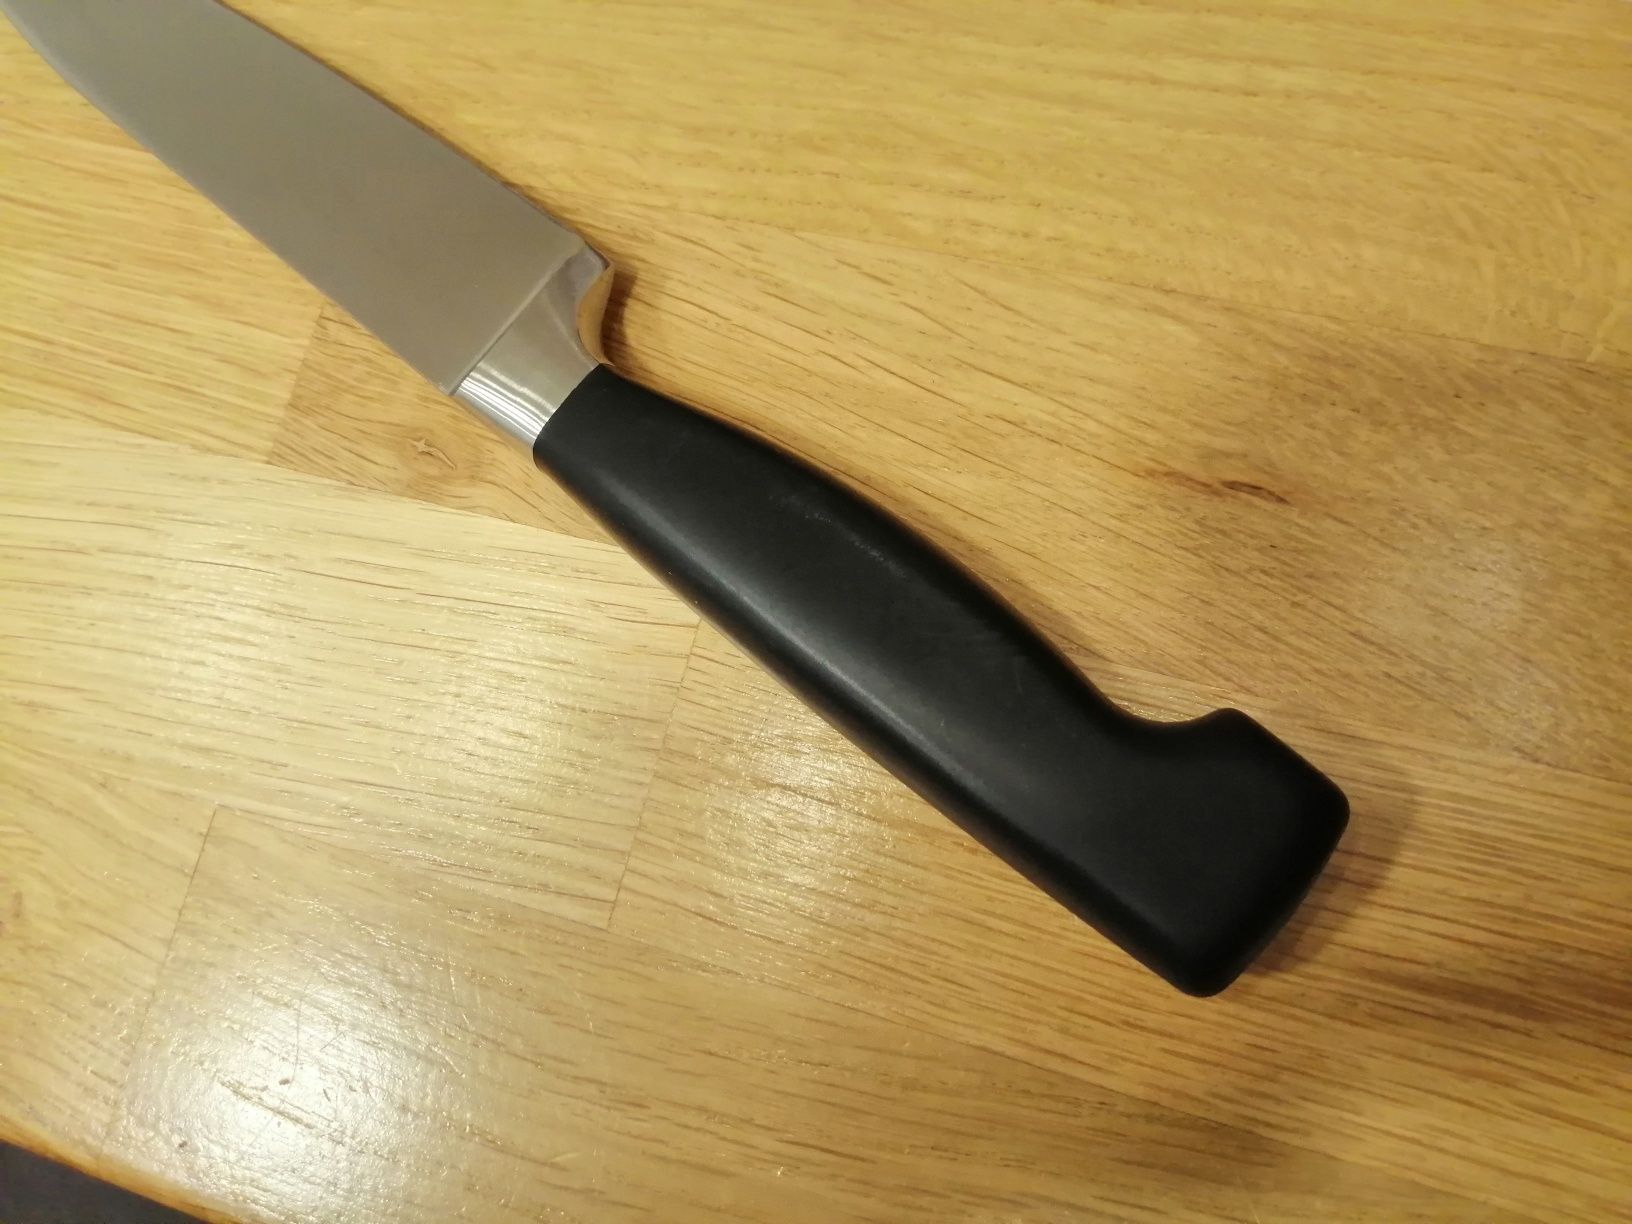 Niemiecki nóż ZWILLING Four Star 16cm uniwersalny / utility knife